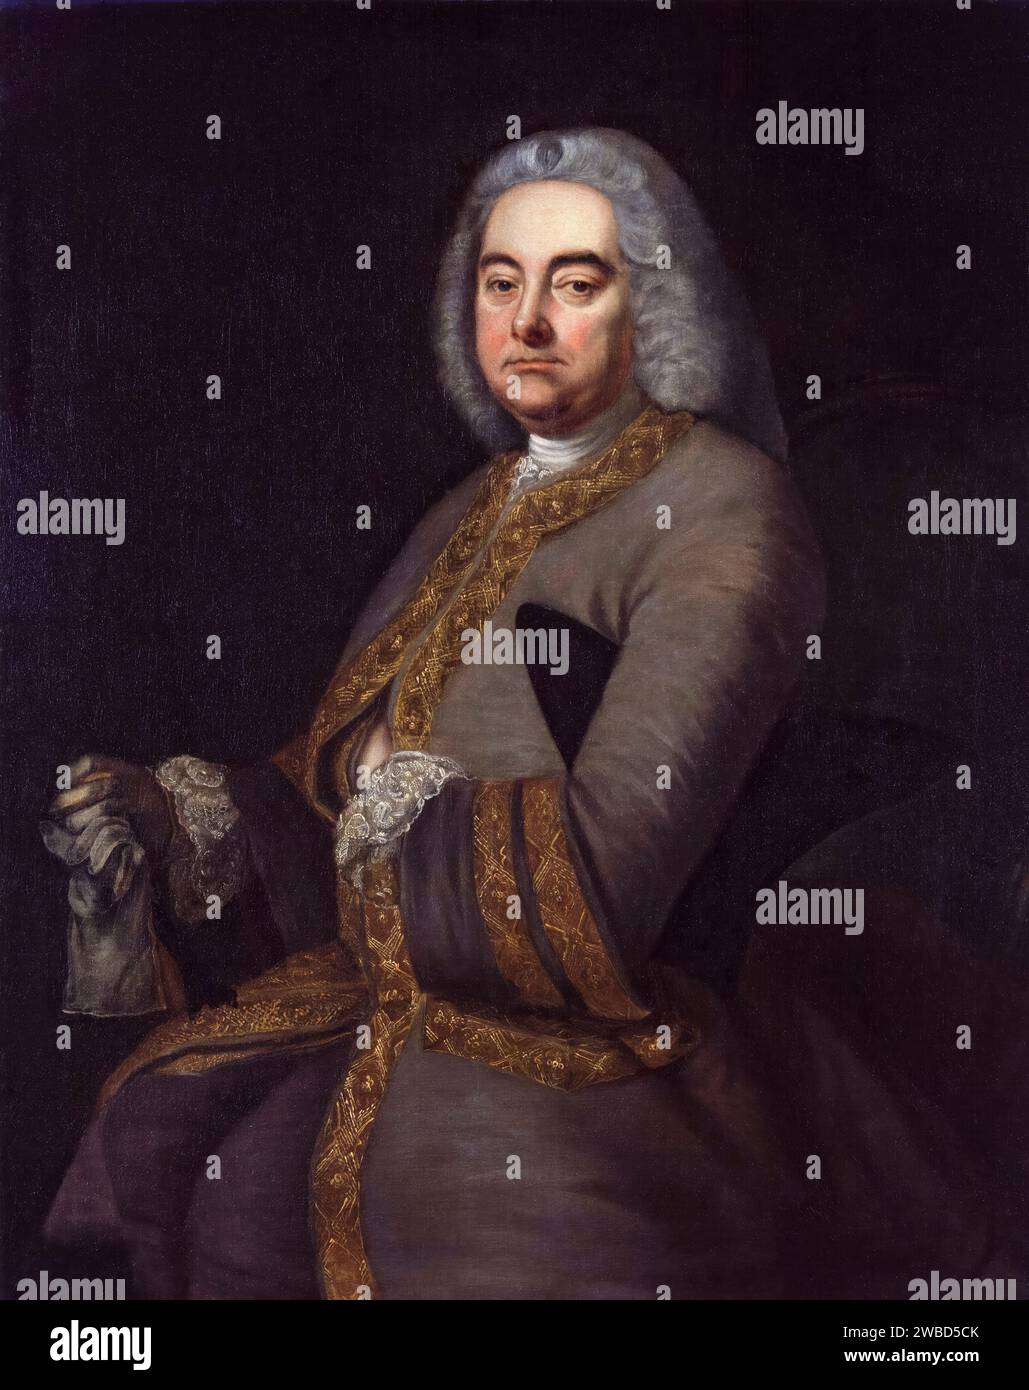 George Frideric Handel (1685-1759), compositore barocco tedesco-britannico, ritratto dipinto ad olio su tela dopo Thomas Hudson, 1756-1800 Foto Stock